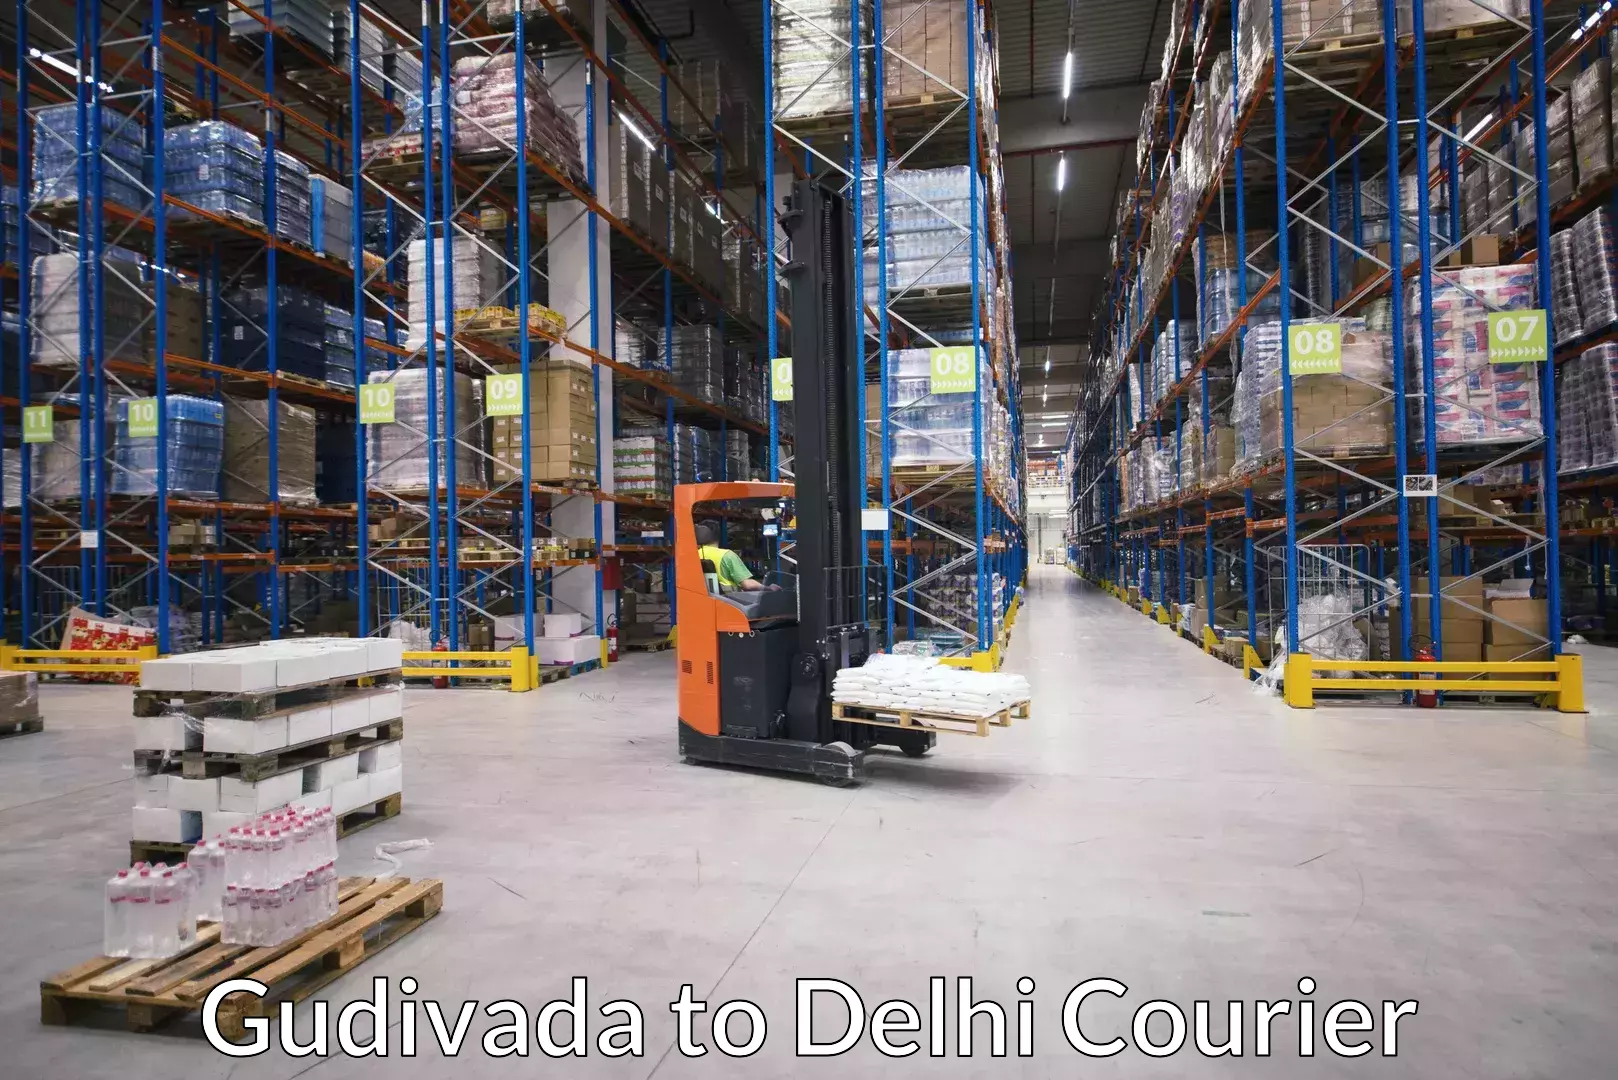 Full-service movers Gudivada to Delhi